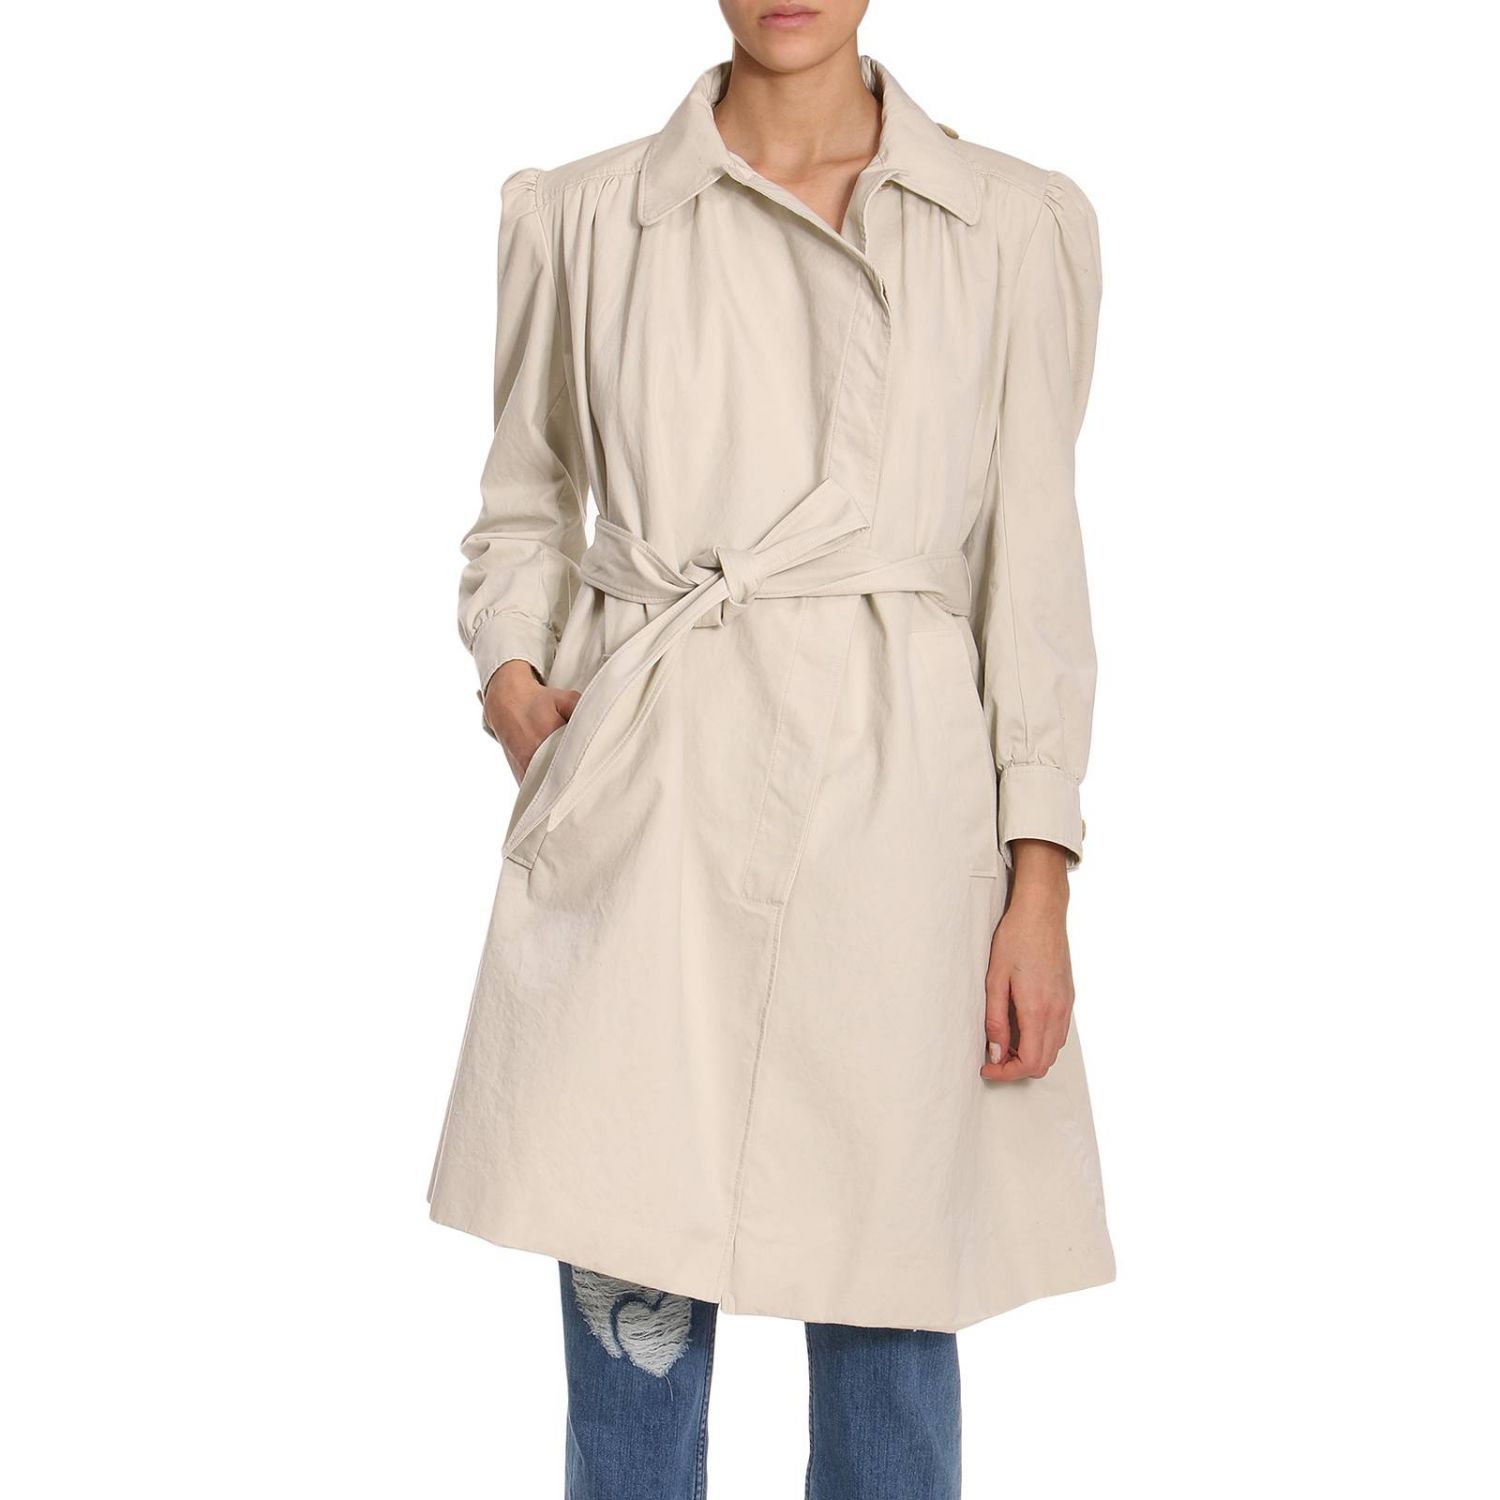 Balenciaga Outlet: Coat women | Coat Balenciaga Women White | Coat ...